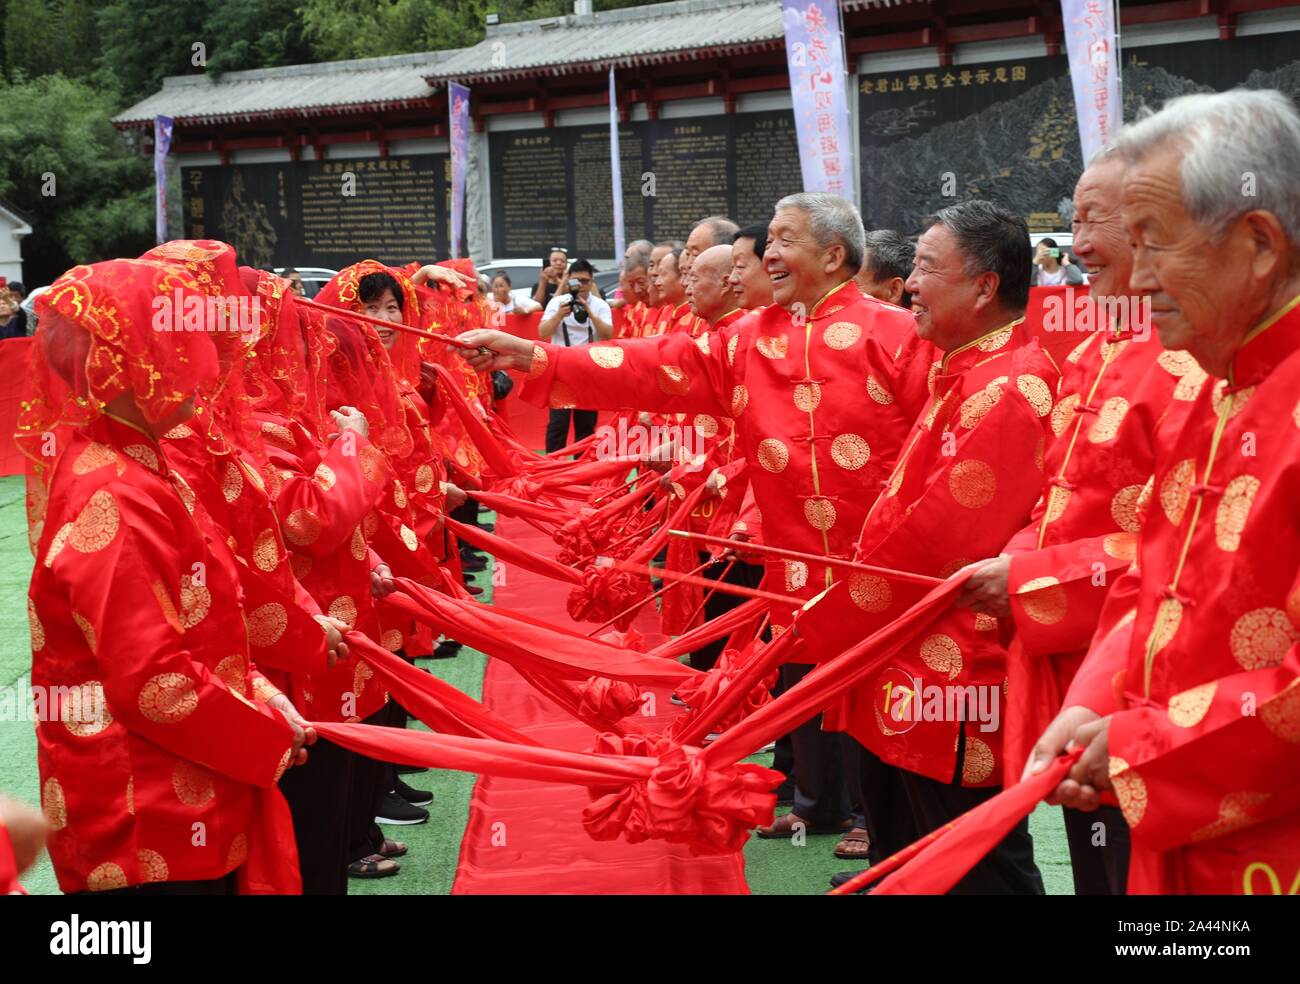 Chinesische ältere Paare nehmen an einer Gruppe Hochzeit Zeremonie Traditionelle Chinesische festival Qixi Festival, auch bekannt als die chinesischen Valen zu feiern. Stockfoto